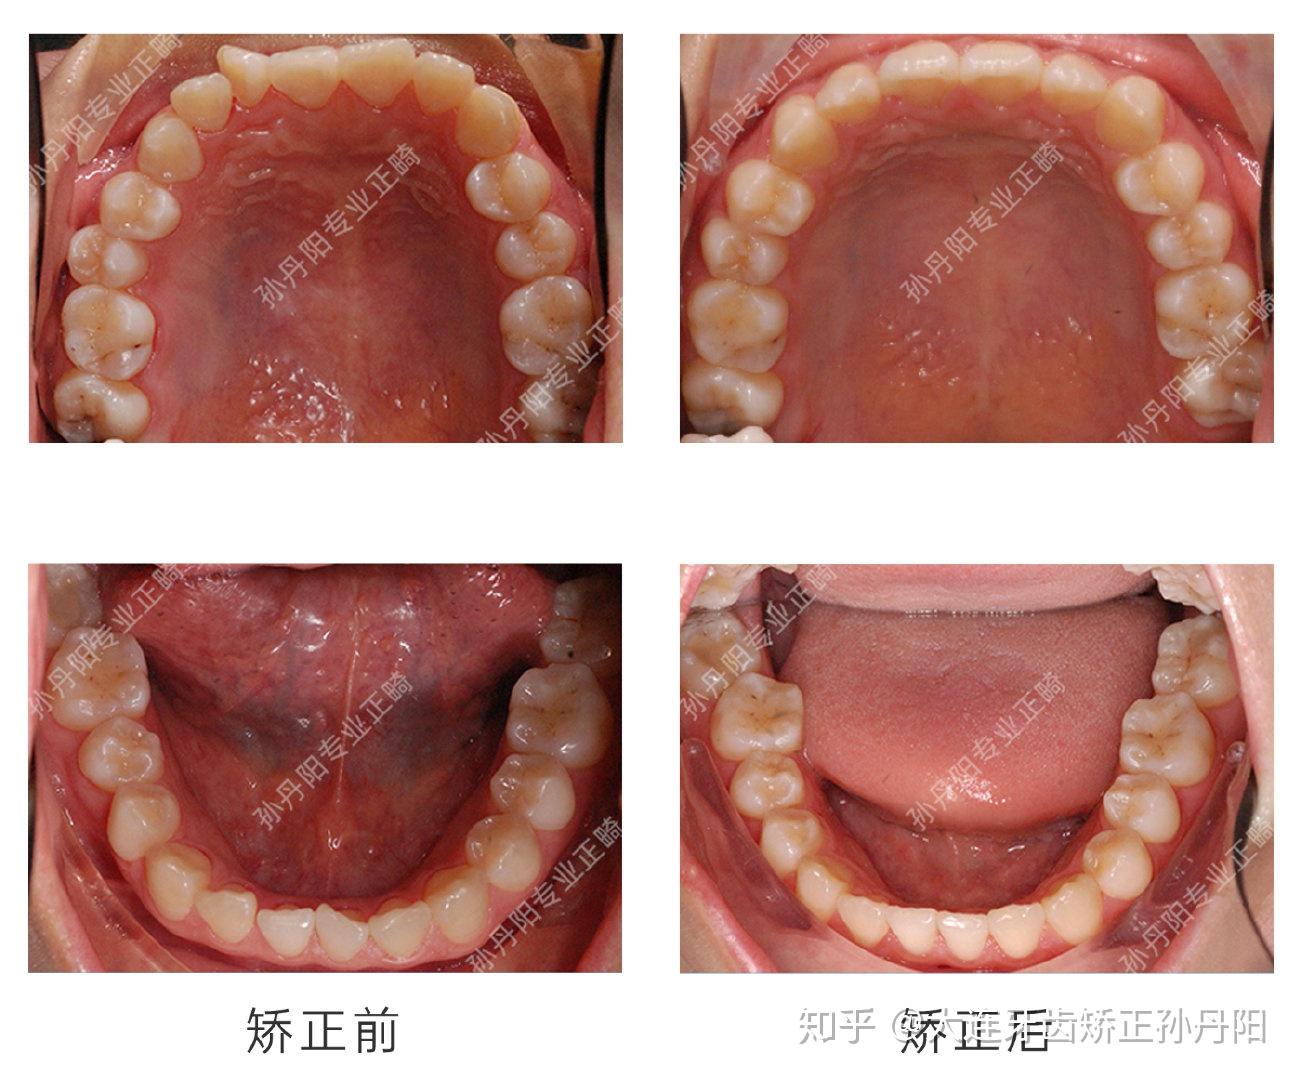 烤瓷牙骨性矫正|改善上牙龈突|调整嘴突面型|重建自信笑容 - 哔哩哔哩